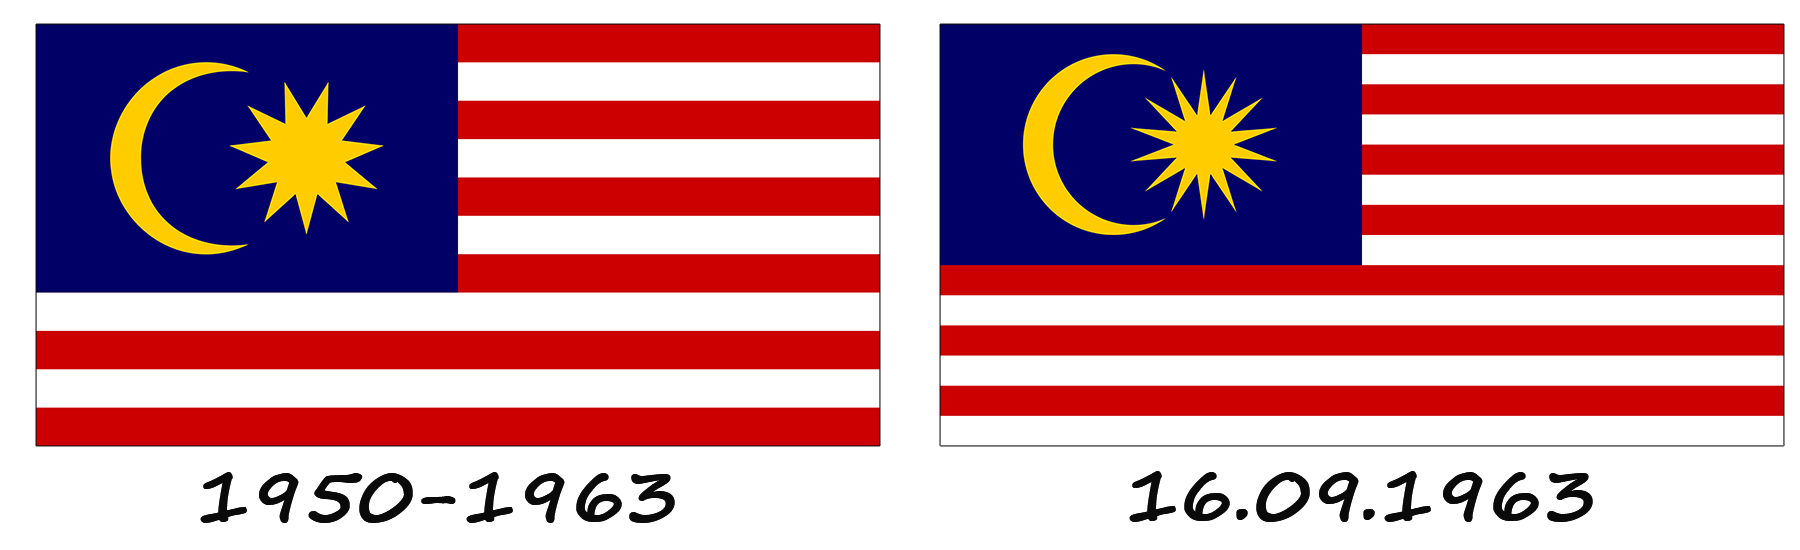 Історія прапора Малайзії